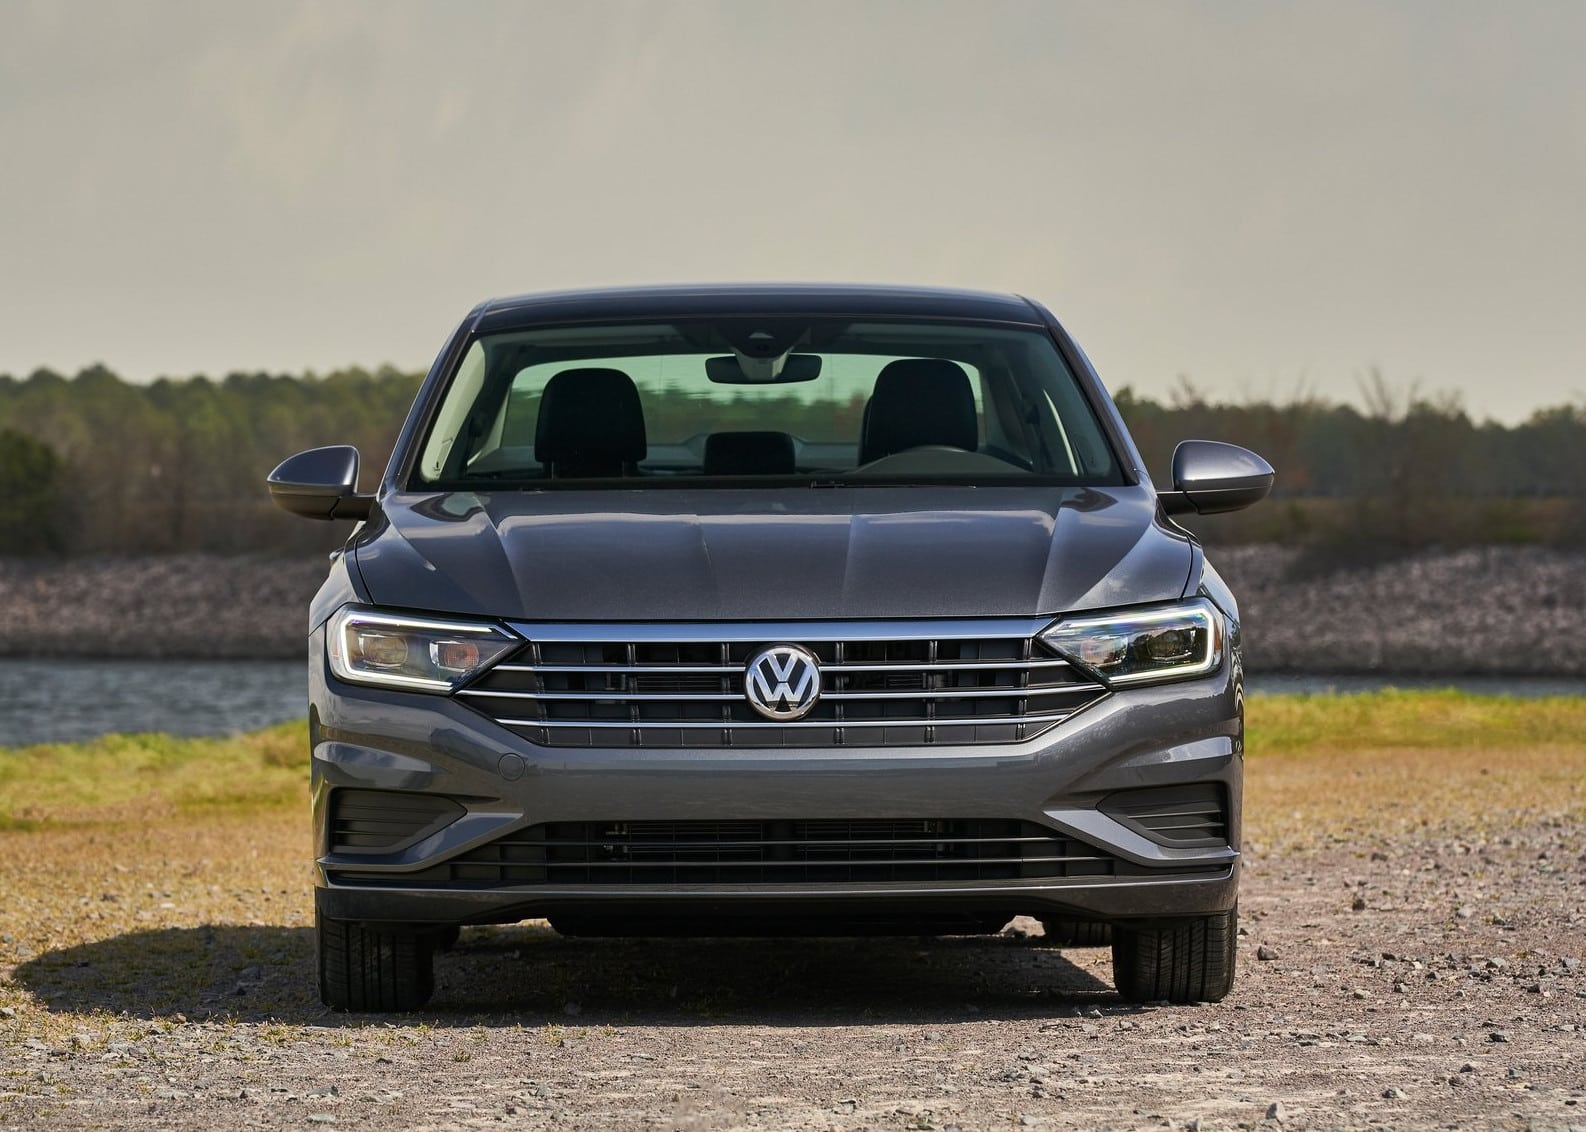 Volkswagen amplía garantía en vehículos nuevos